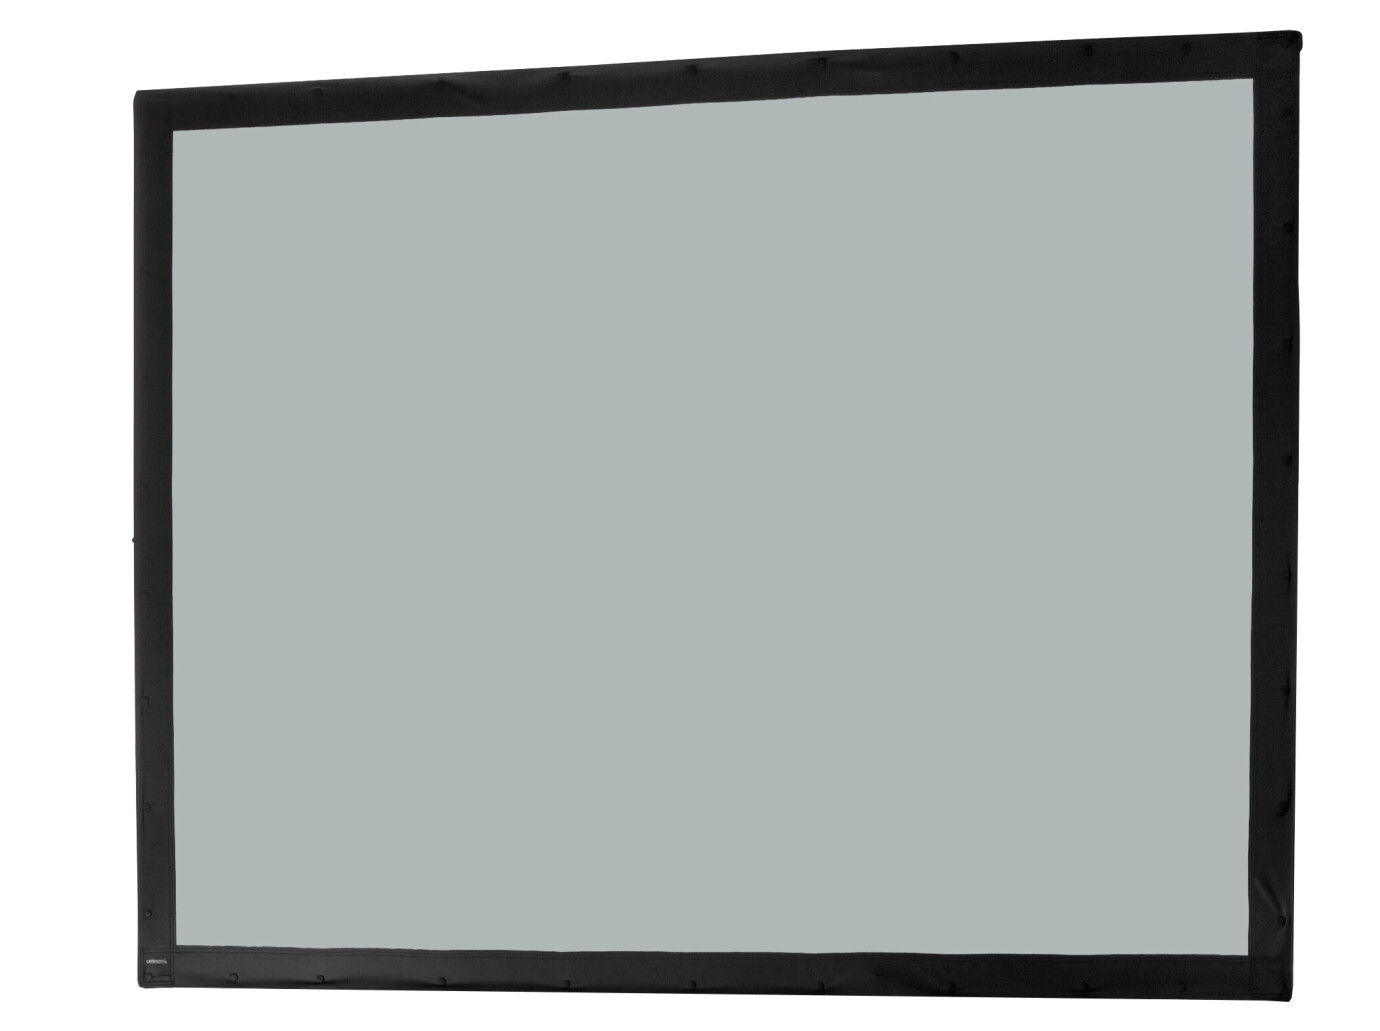 Toile 203 x 152 cm Ecran sur cadre celexon « Mobil Expert », projection arrière